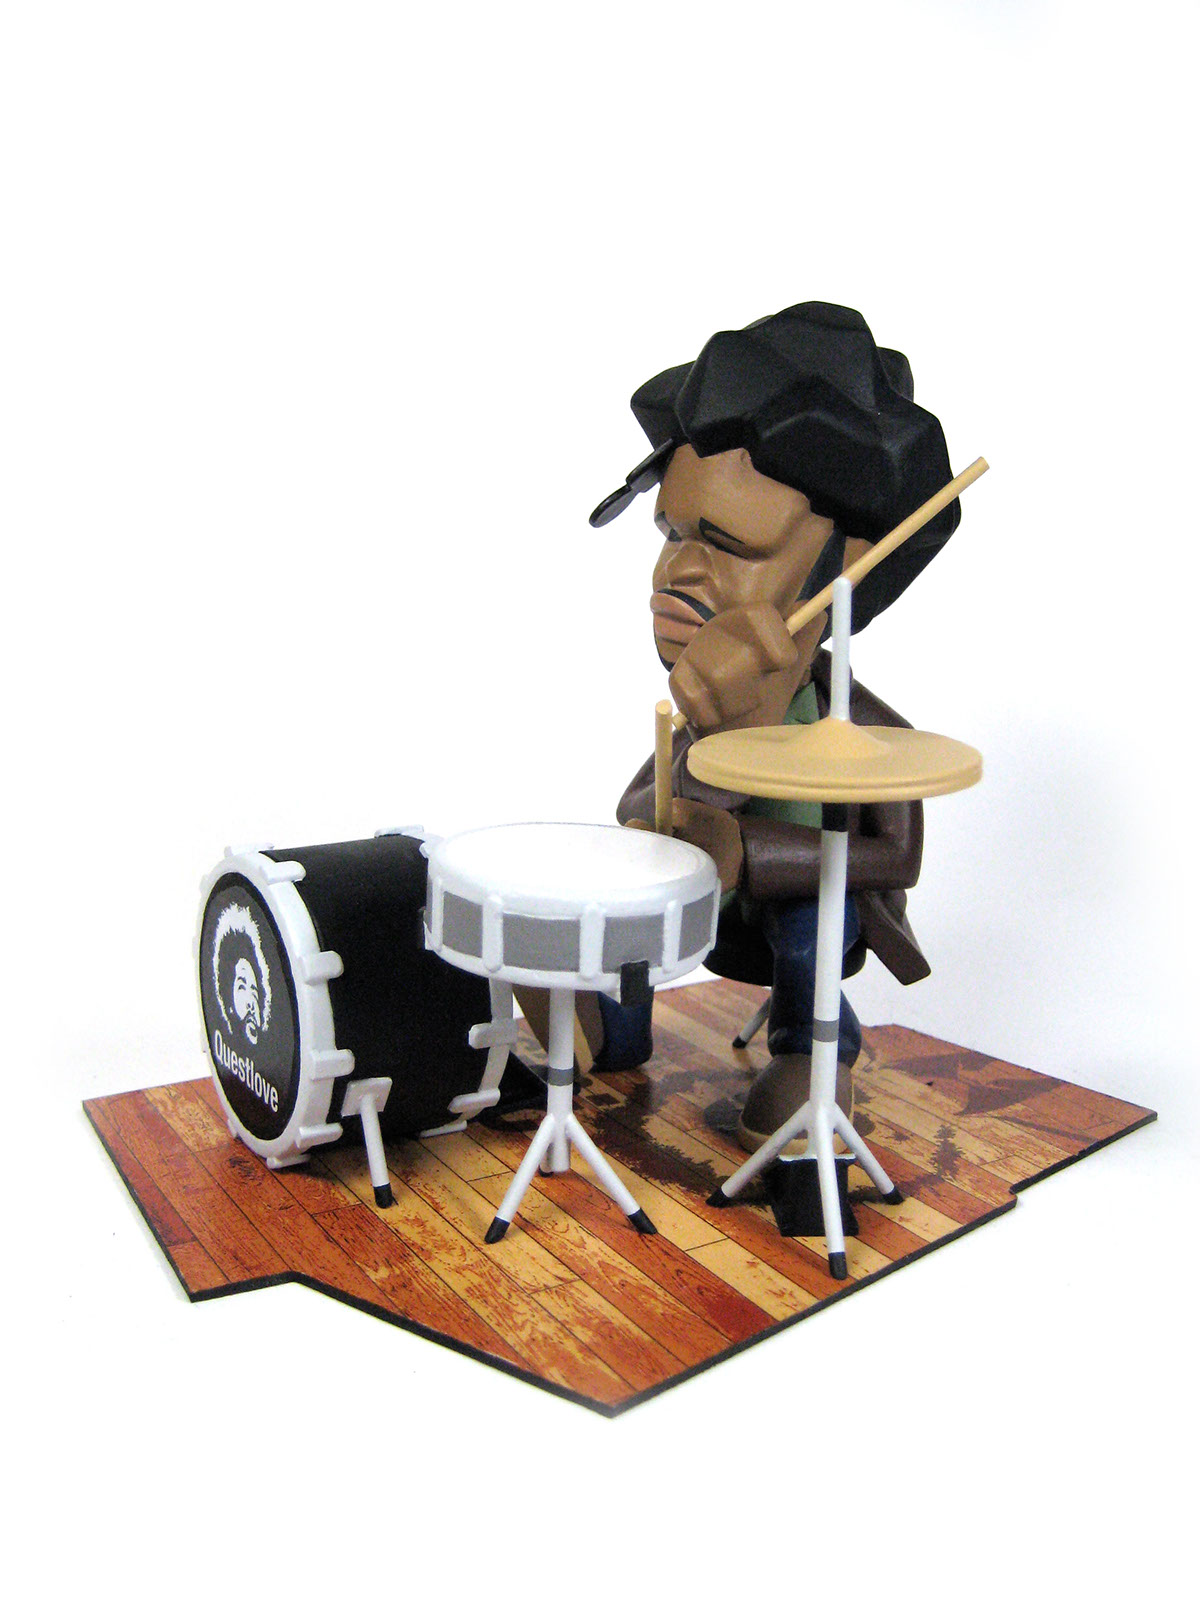 roots Questlove artist hiphop jazz drum figure toy